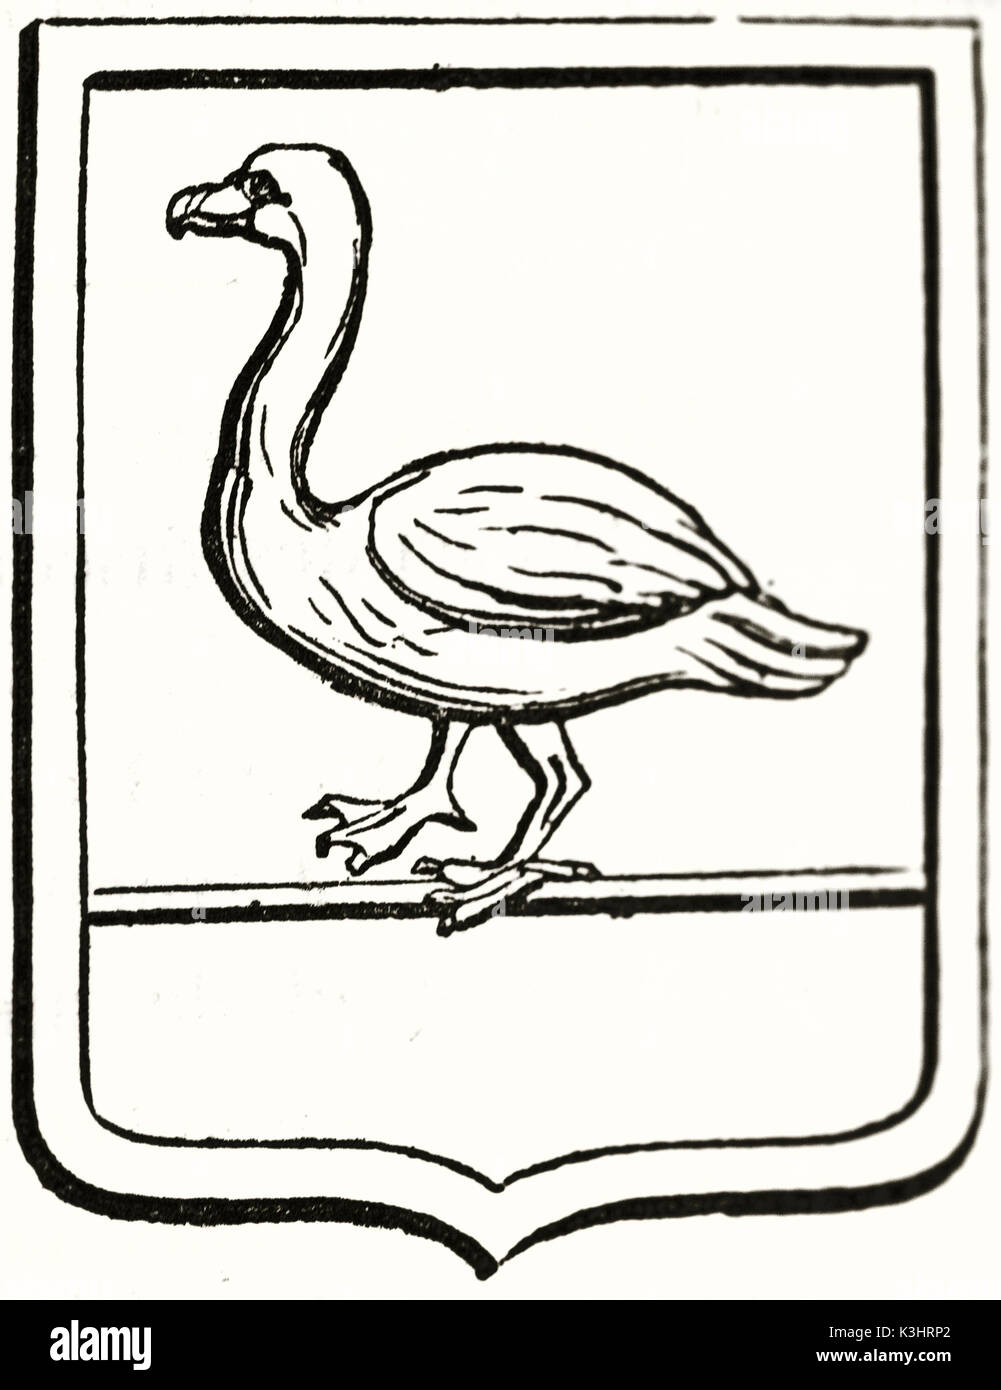 Alte graviert Reproduktion eines Wappen, die in einem Schwan. Von unbekannter Autor, auf Magasin Pittoresque, Paris, 1838 veröffentlicht. Stockfoto